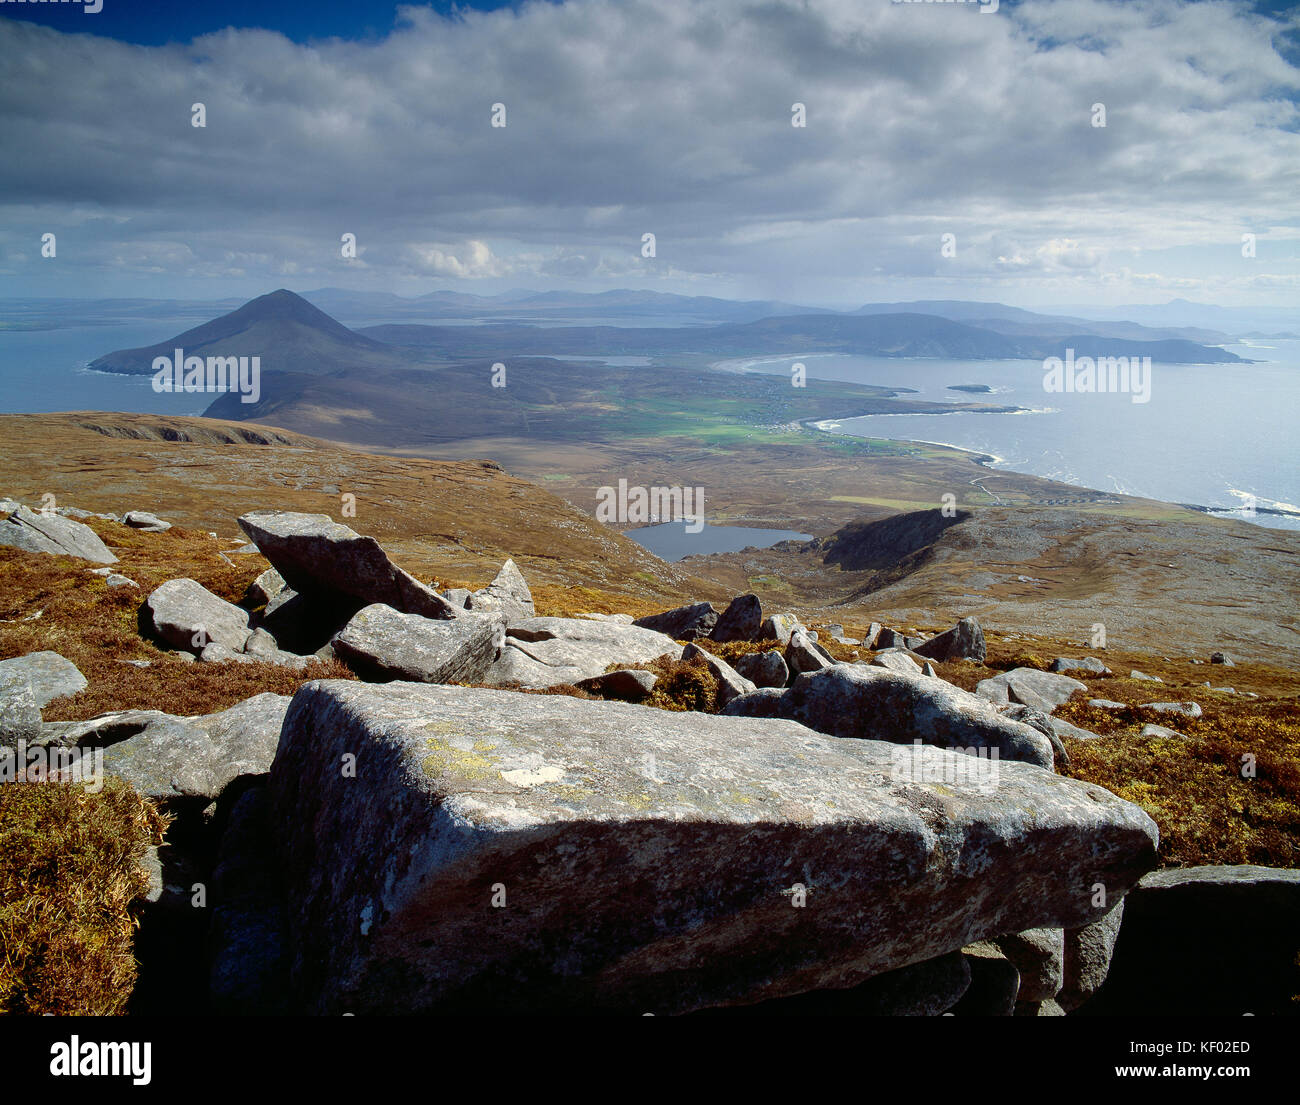 Ireland. County Mayo. Achill Island coast. Stock Photo